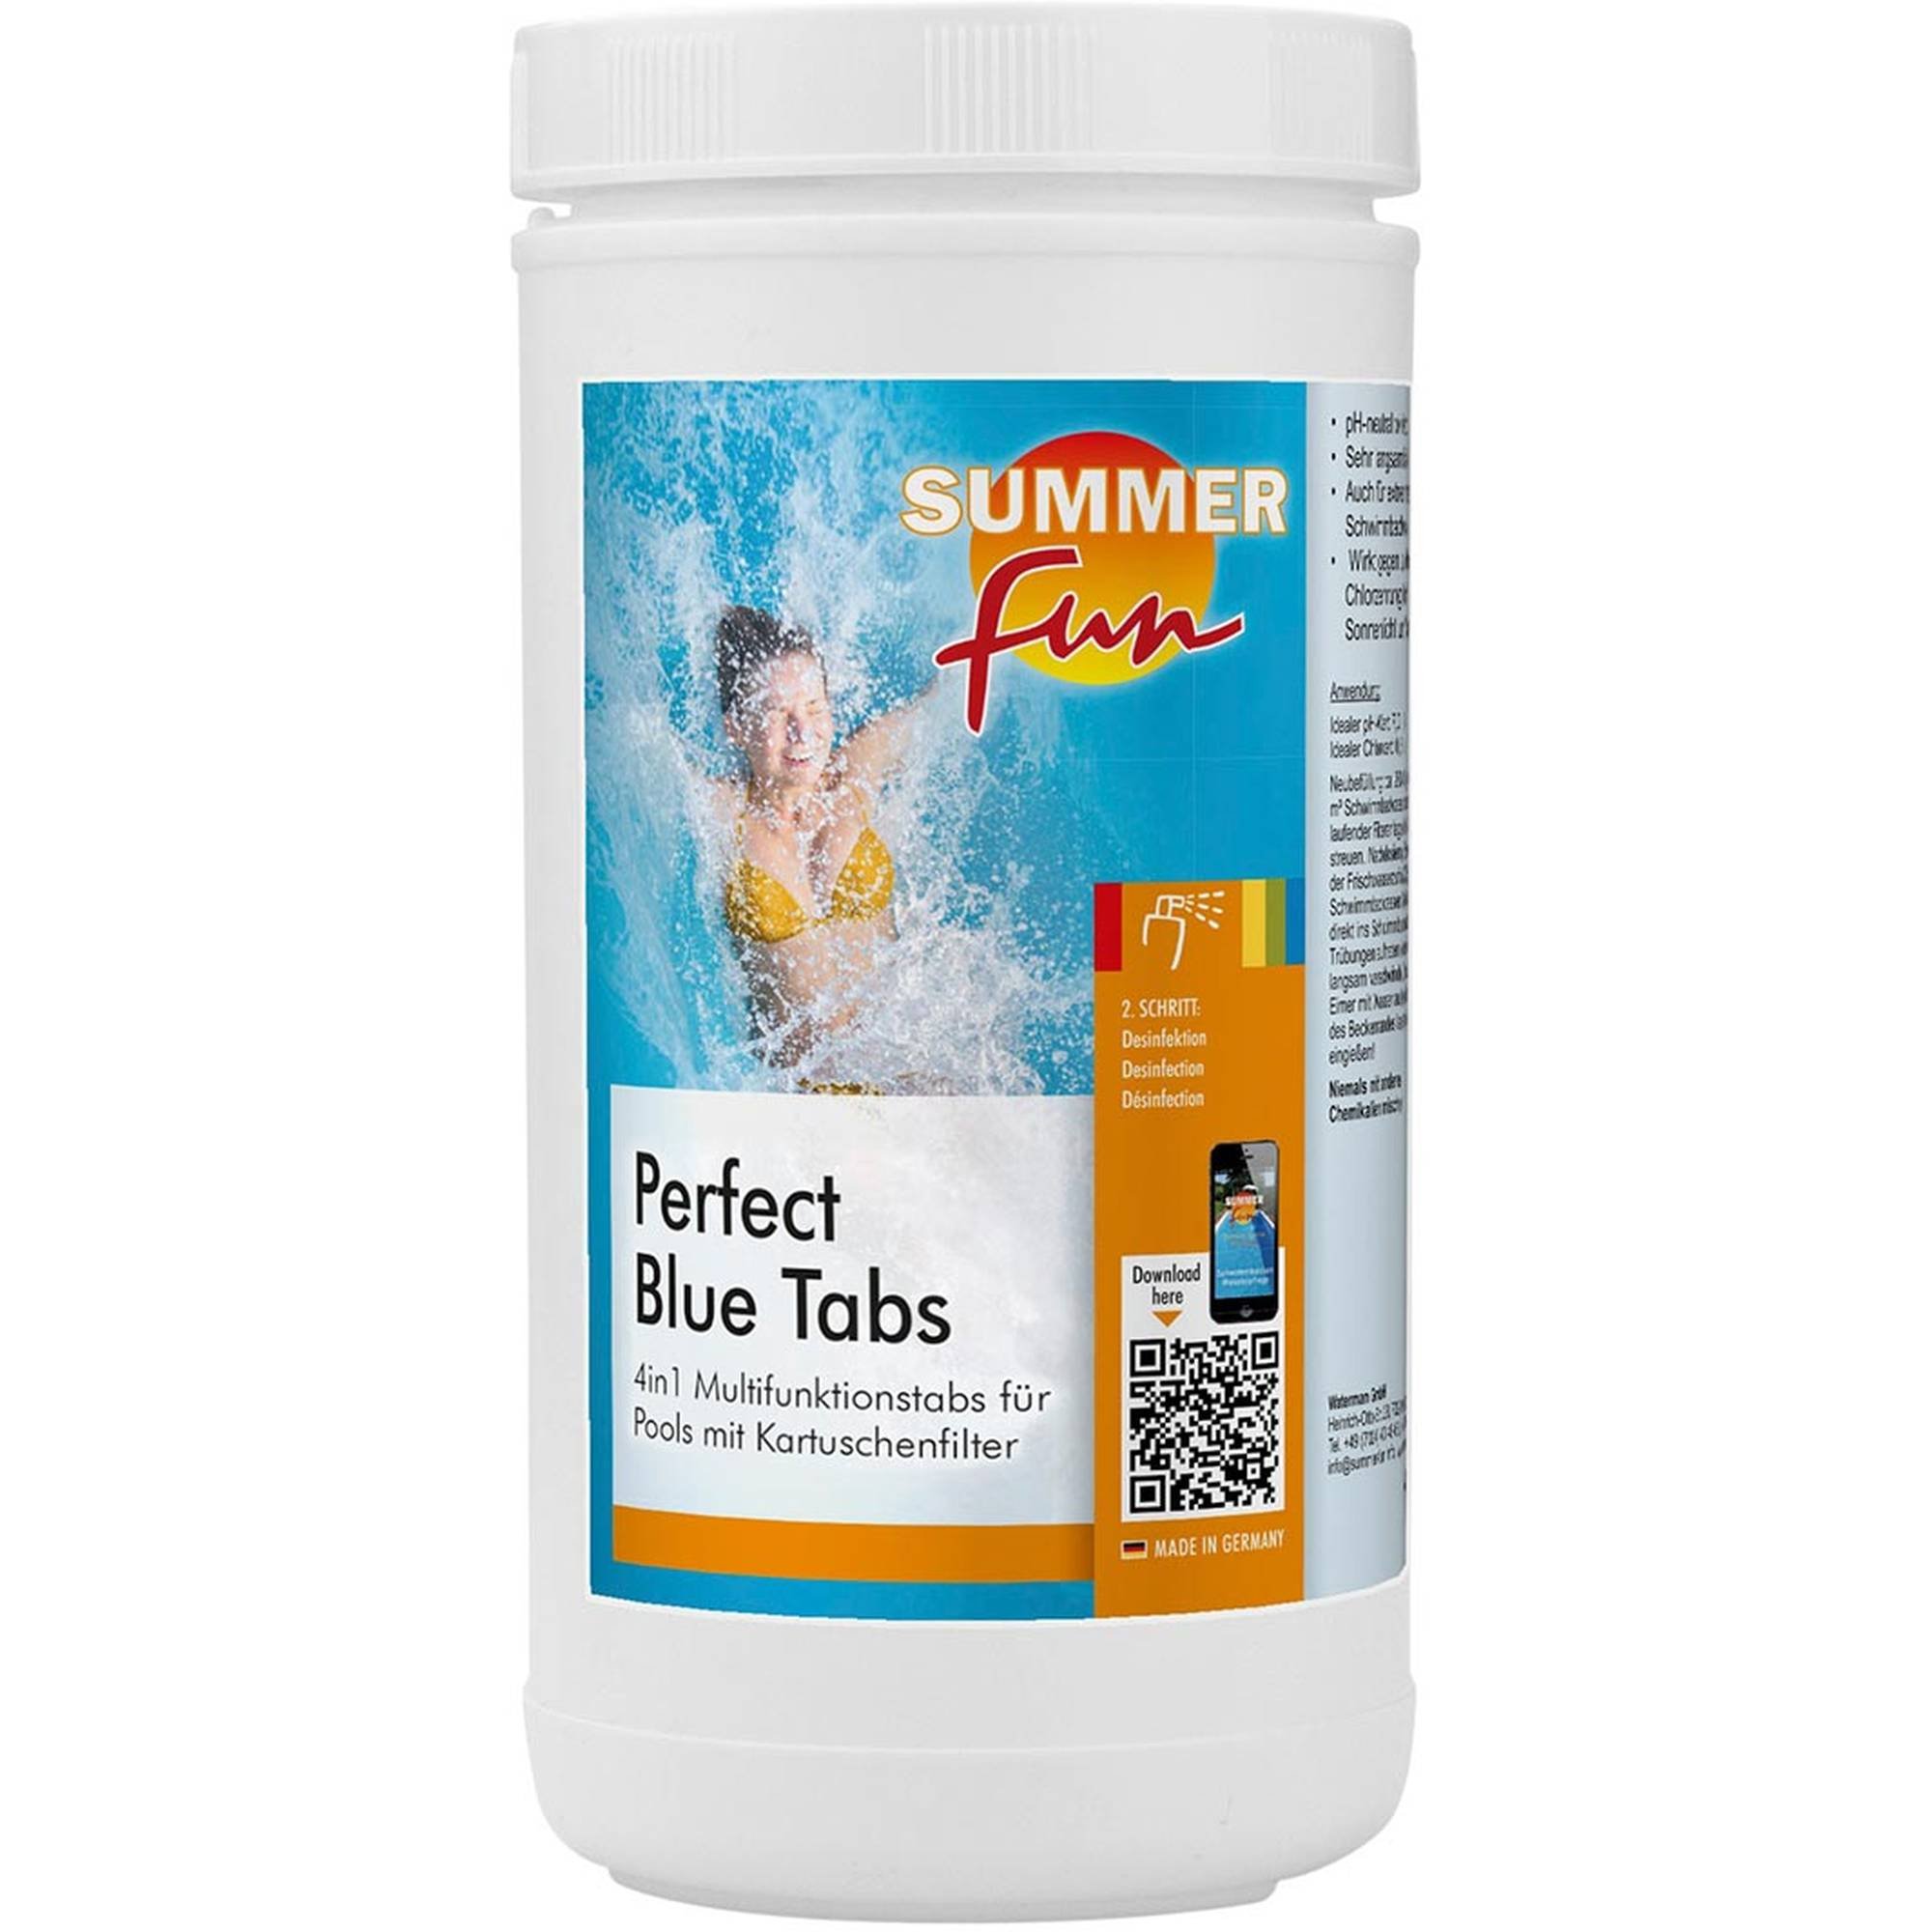 Summer Fun - Perfect Blue Tabs, 1 kg